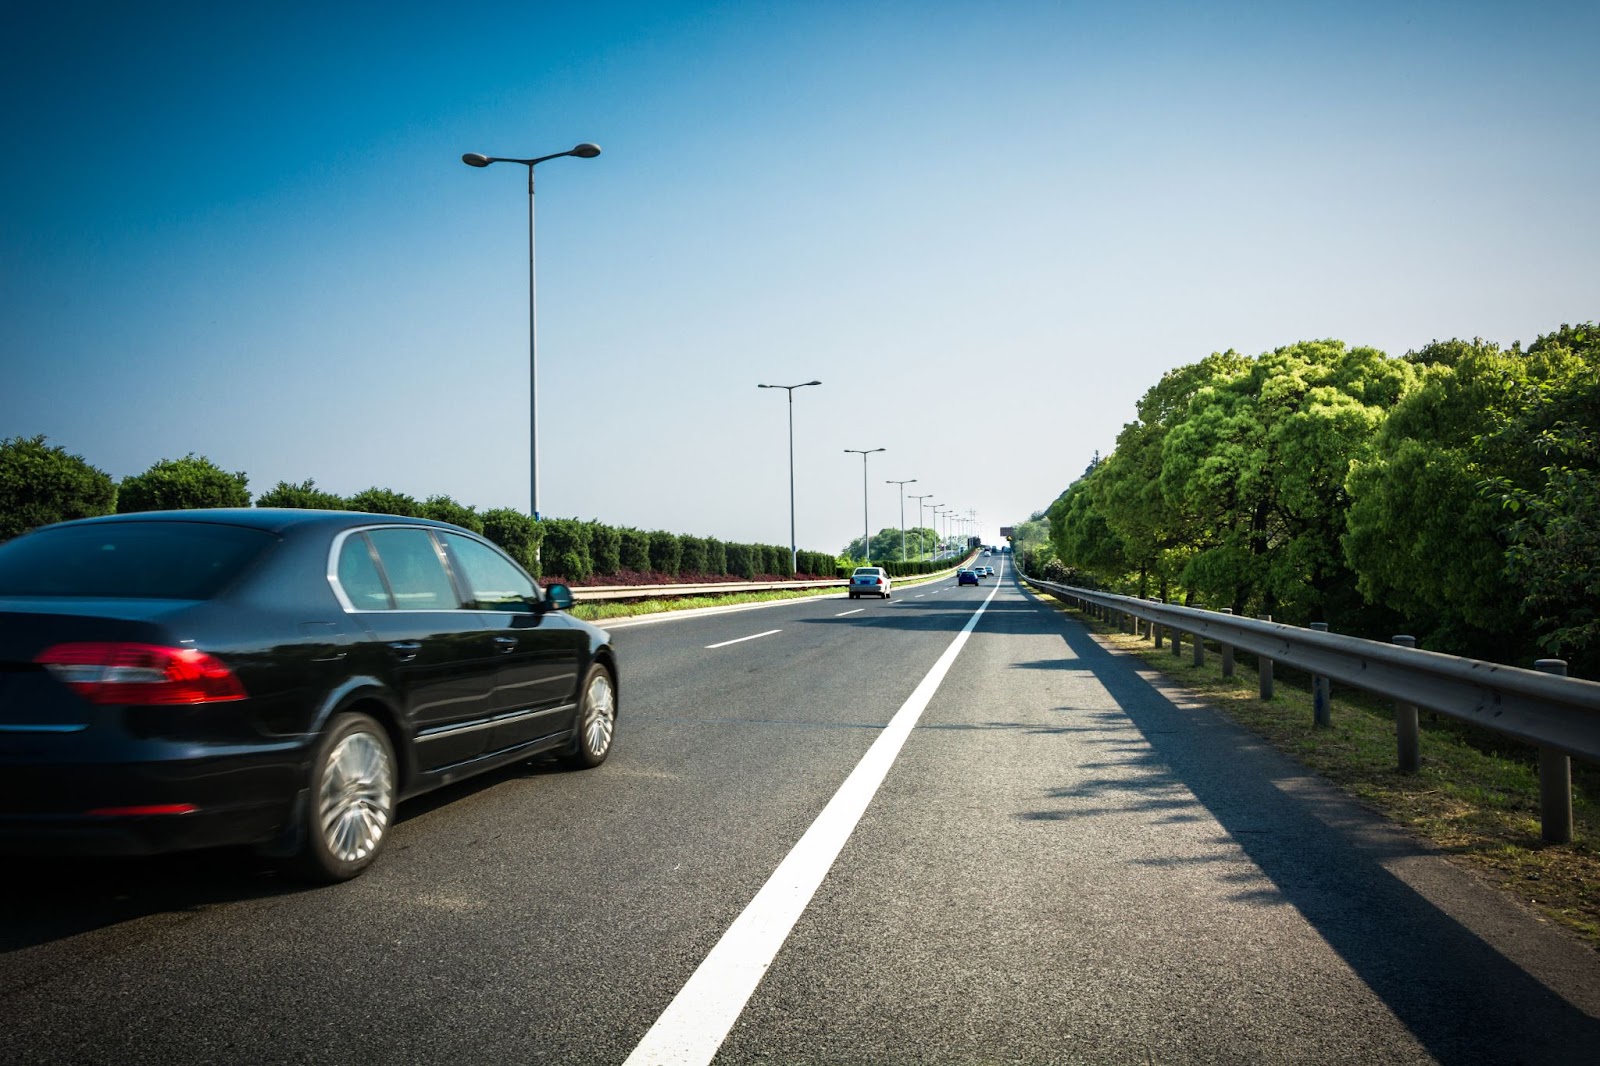 Na imagem de uma estrada durante o dia, vários carros podem ser observados mantendo uma distância de seguimento apropriada.